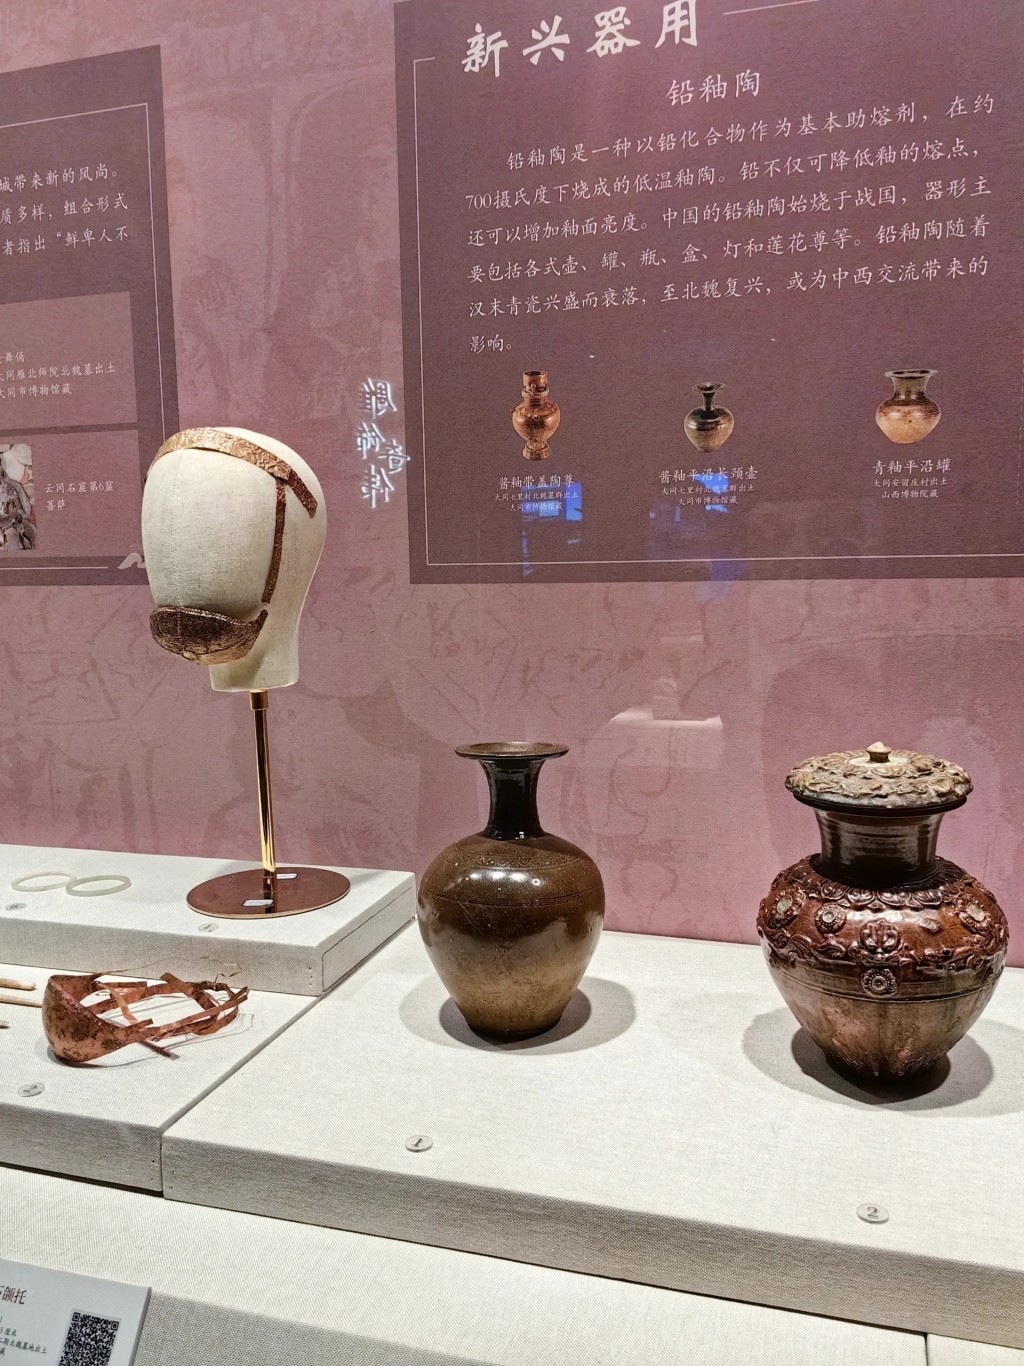 还有超过200件展品及北魏王朝文物珍品（图片来源：小红书）